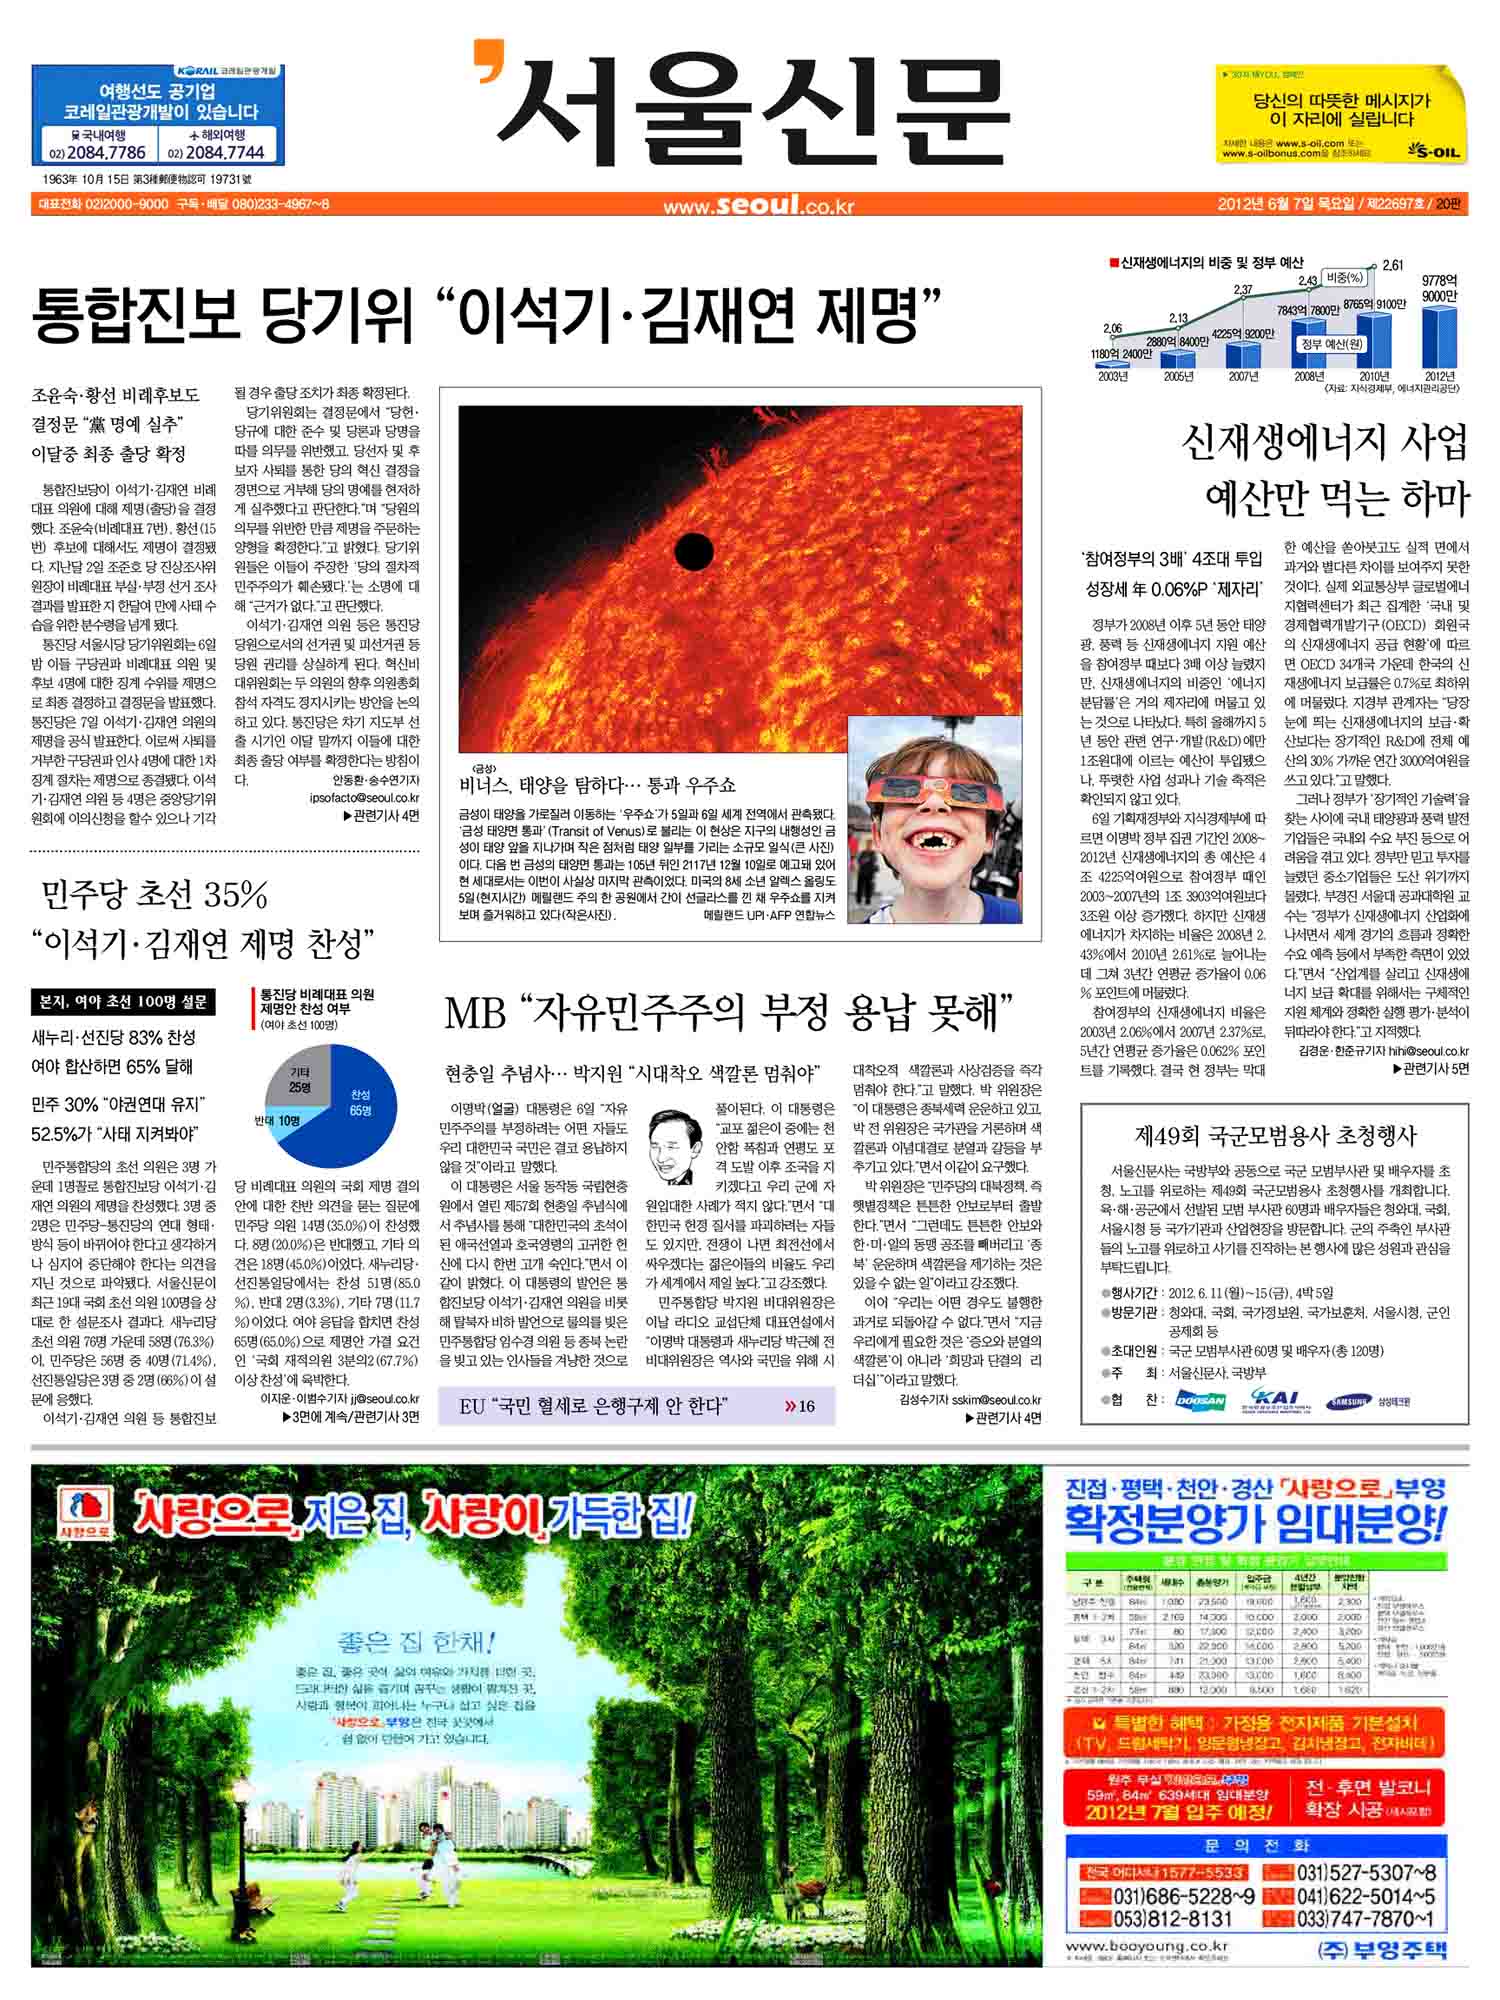 2012 금성 태양면 통과 서울신문